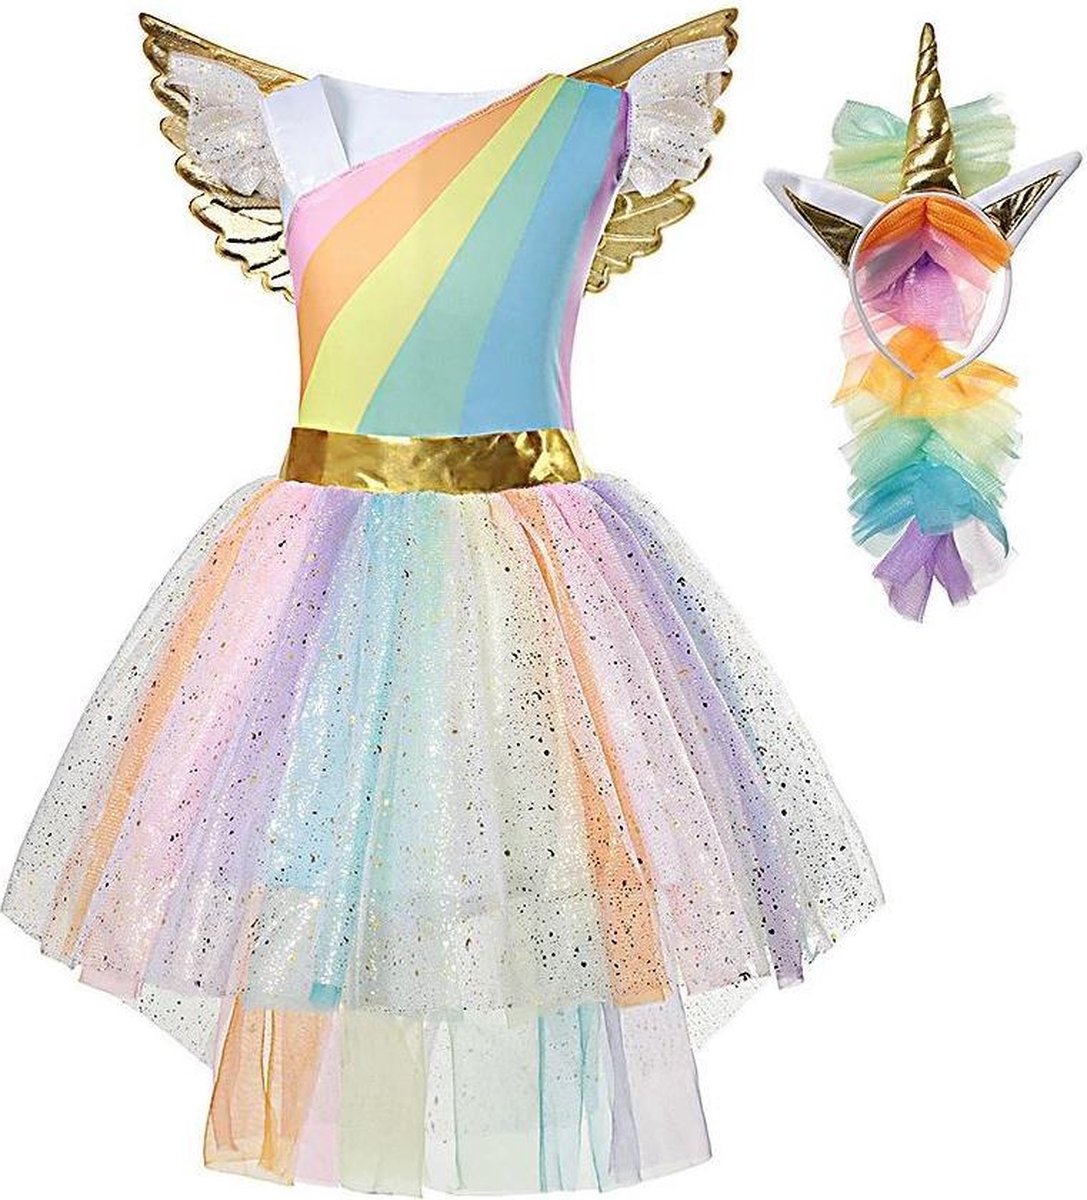 Eenhoorn jurk unicorn jurk eenhoorn kostuum - 128-134 (L) regenboog jurk + haarband Prinsessenjurk meisje verkleedkleren meisje - La Señorita